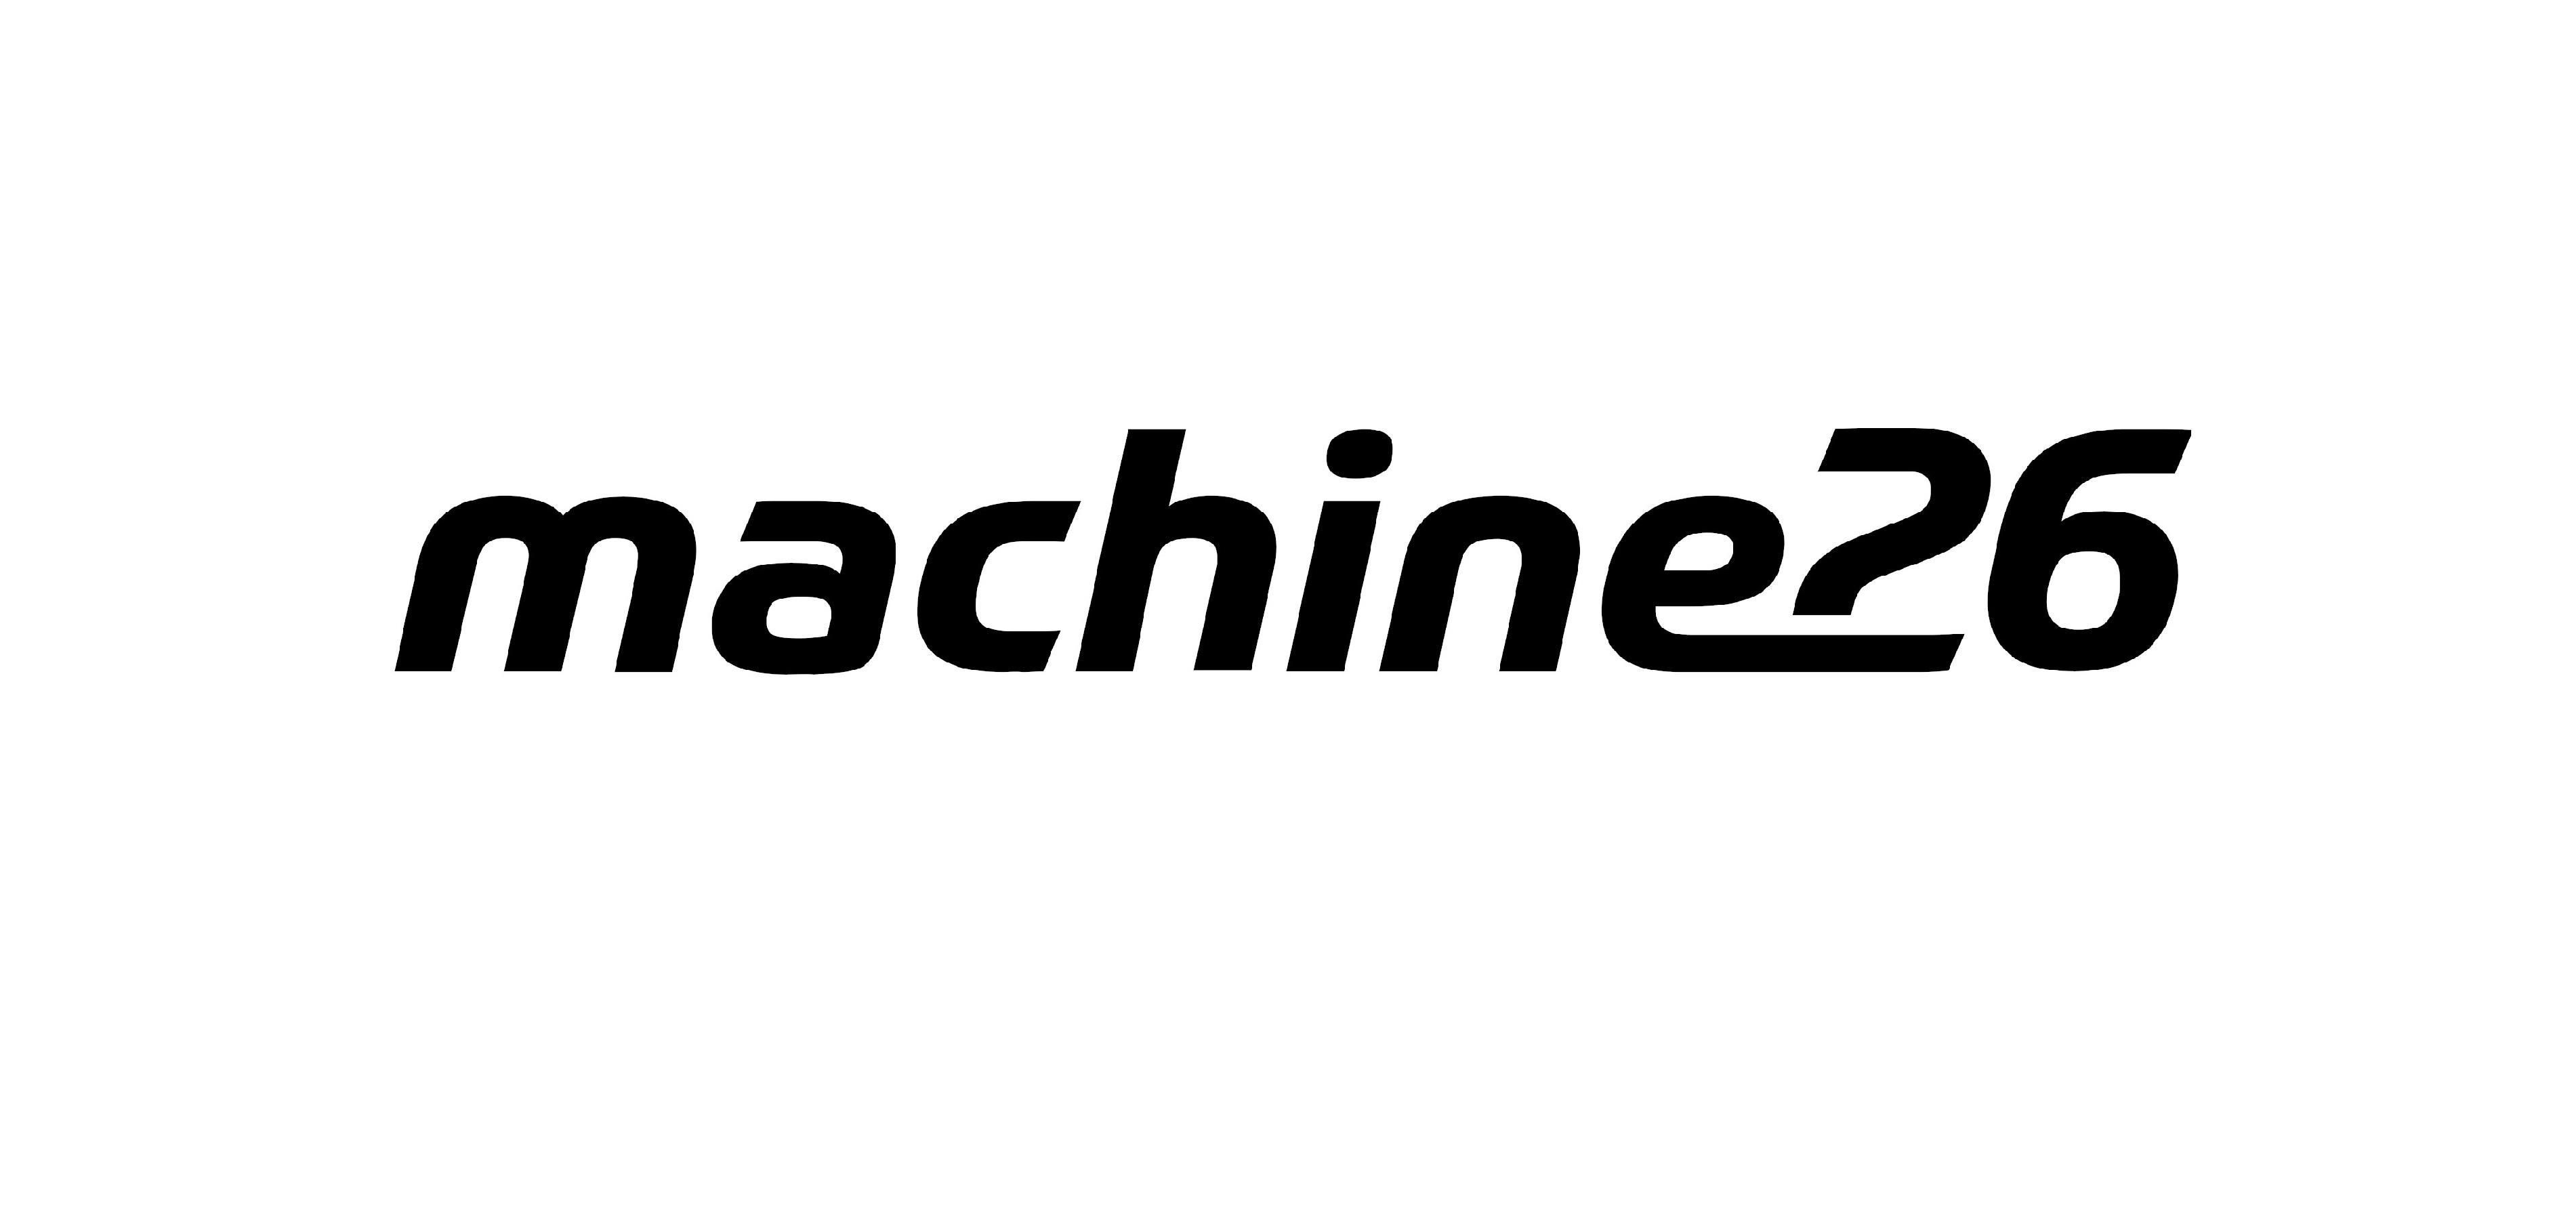 Machine26 logo